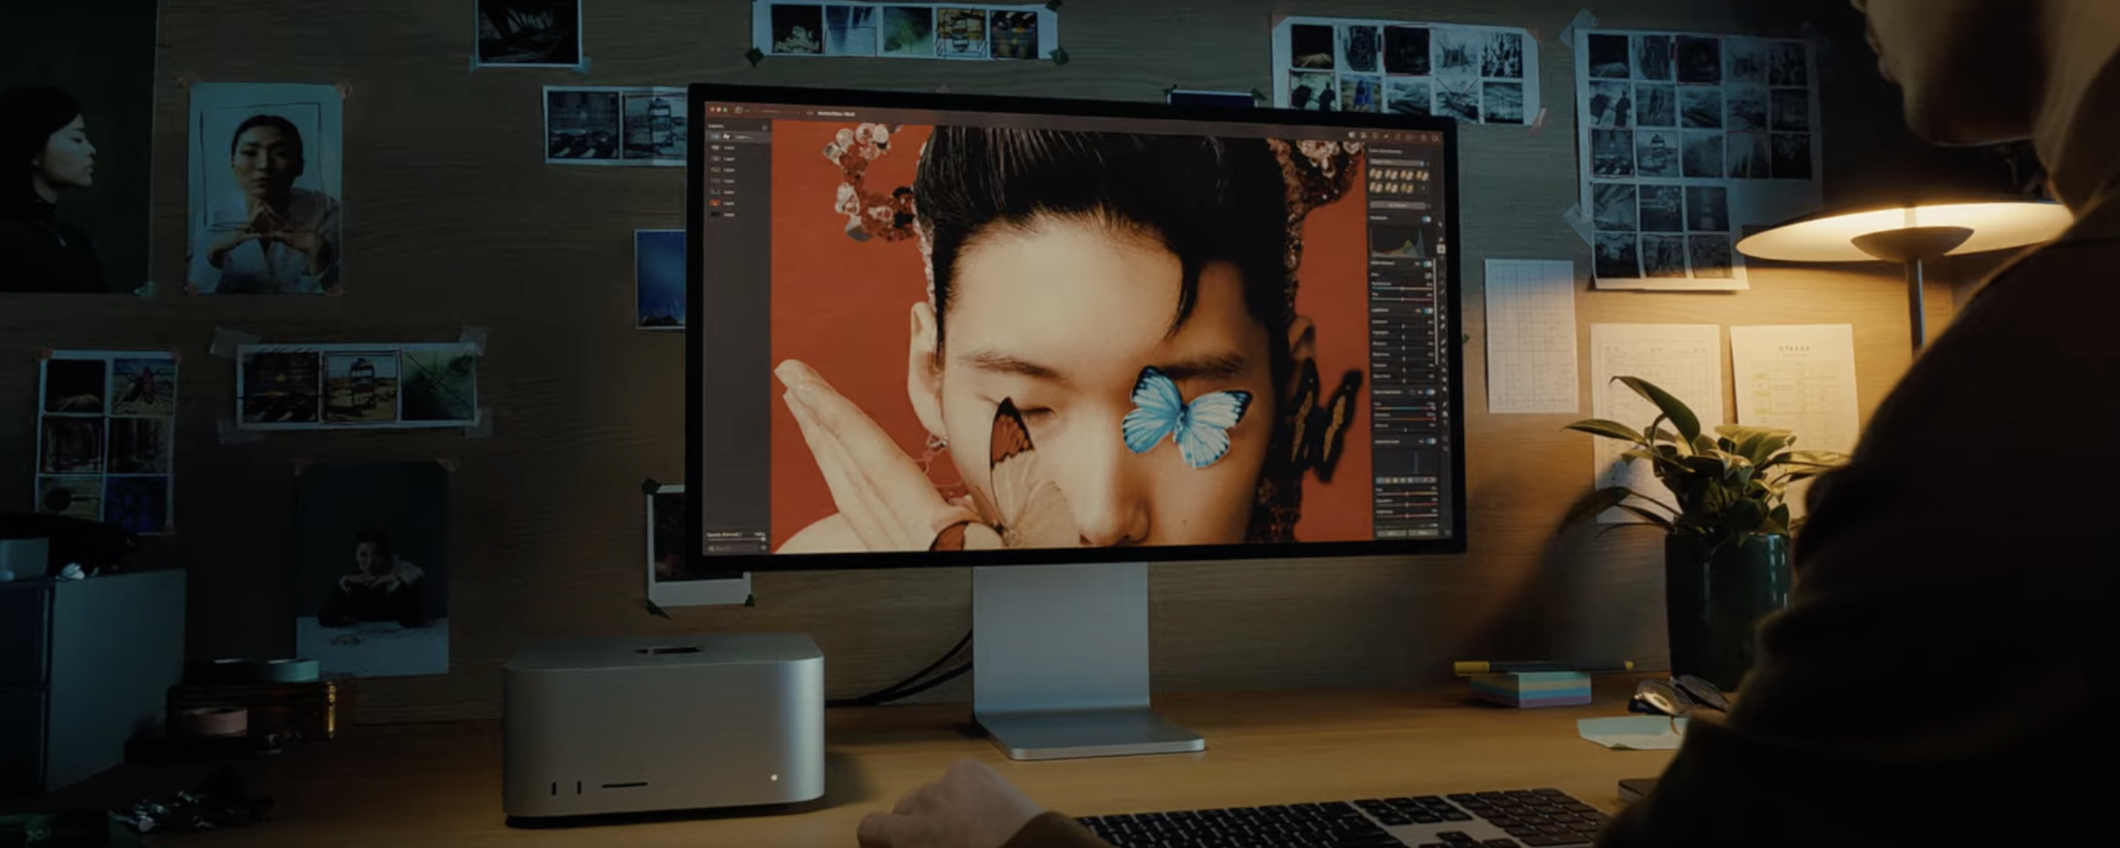 Studio Display: Apple rilascia il fix per la webcam